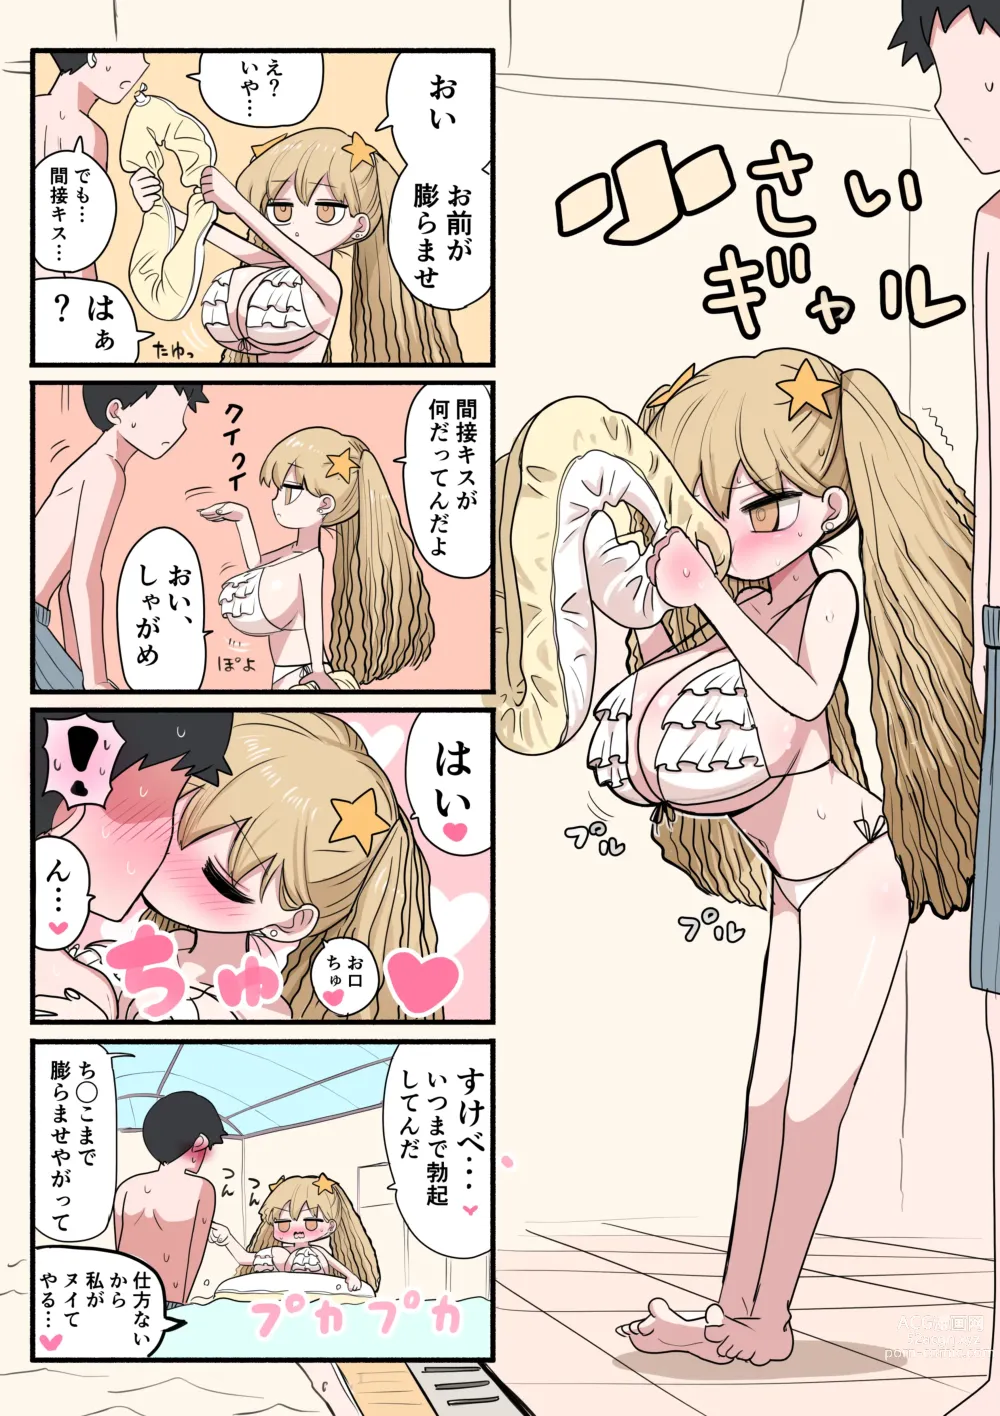 Page 22 of doujinshi Chisai Gal